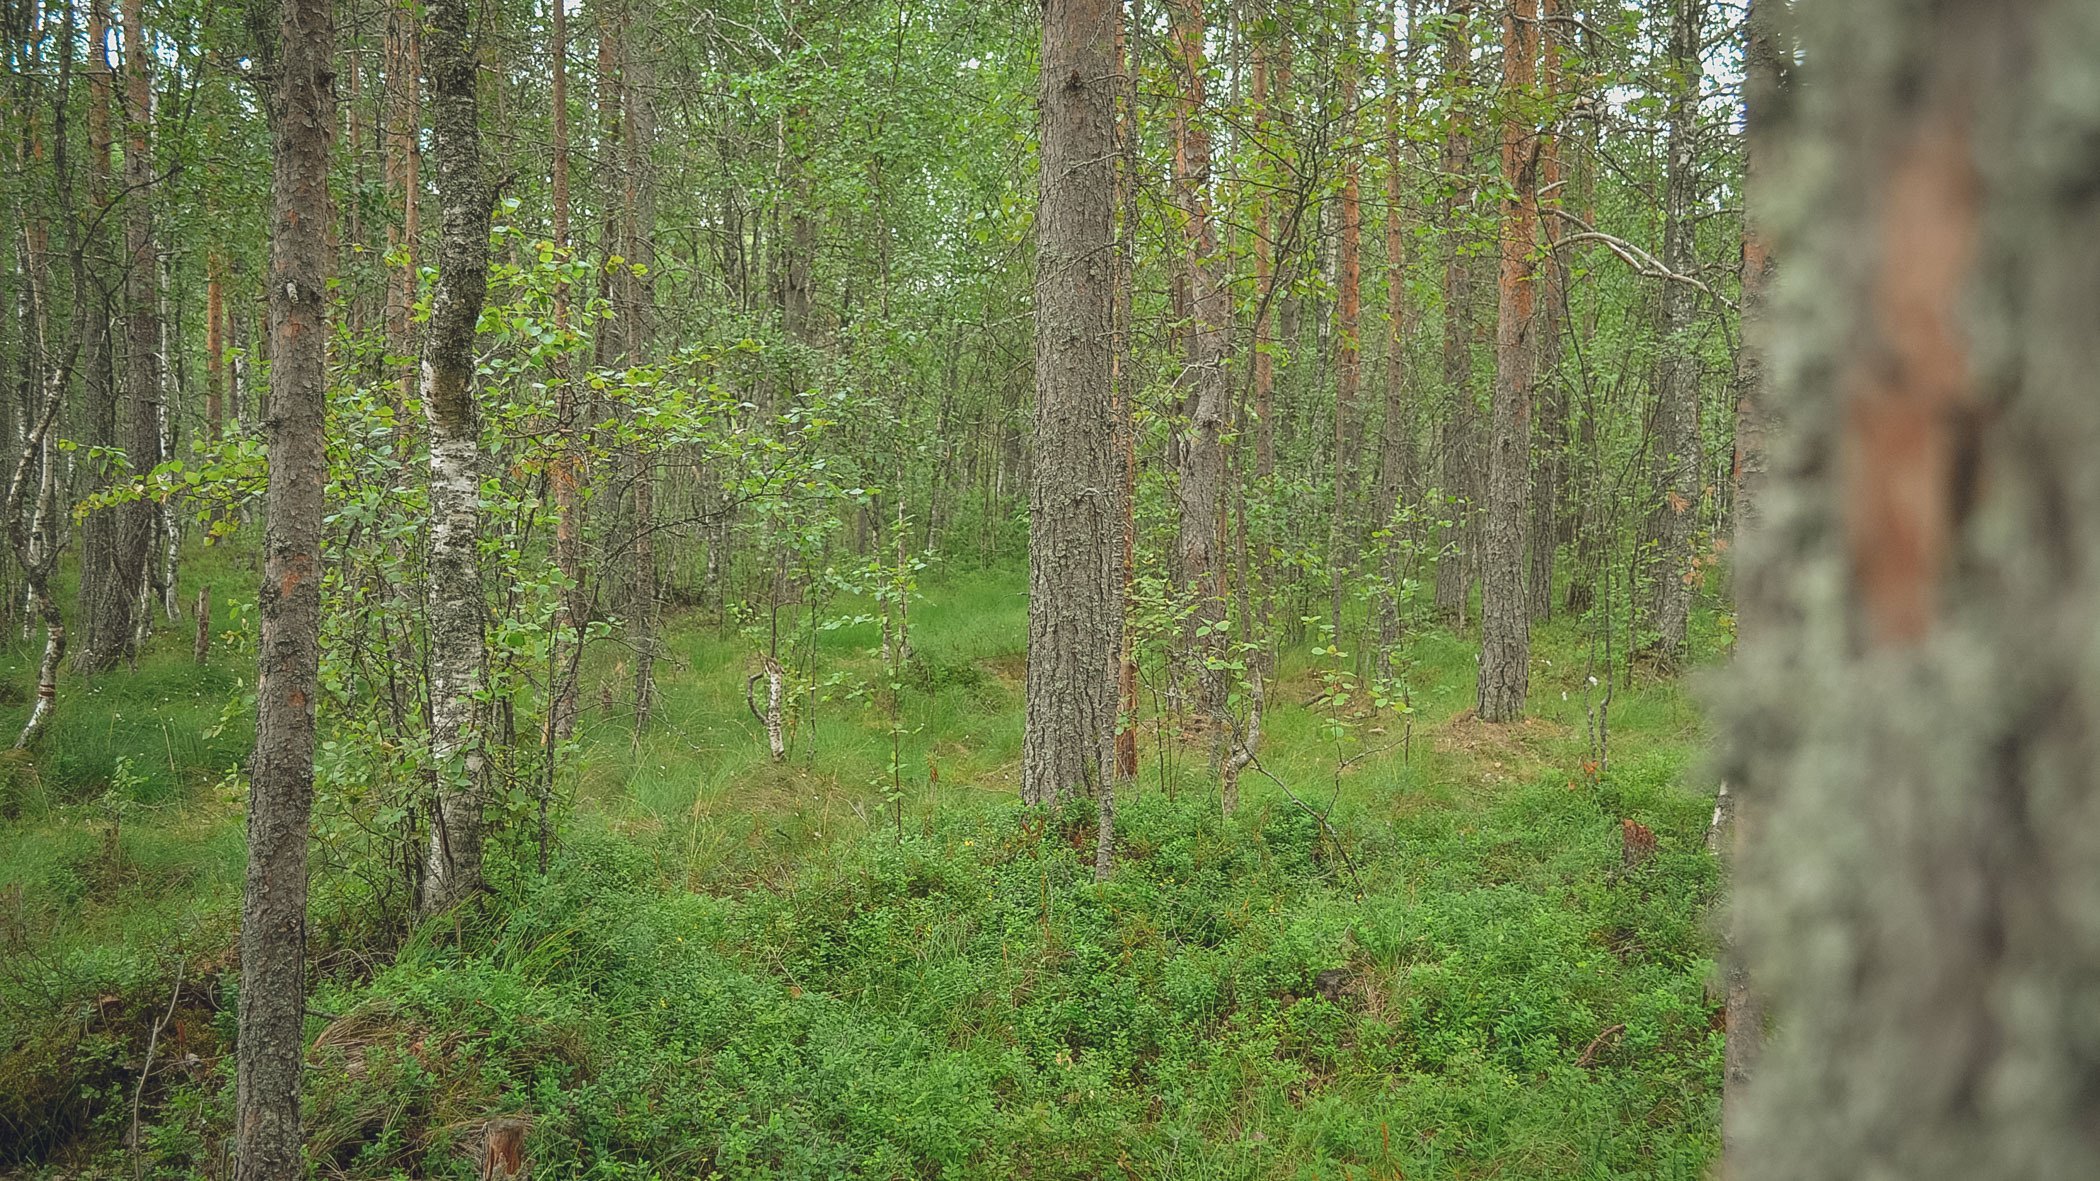 Приморцу советуют проконсультироваться с небожителями по поводу лесной находки